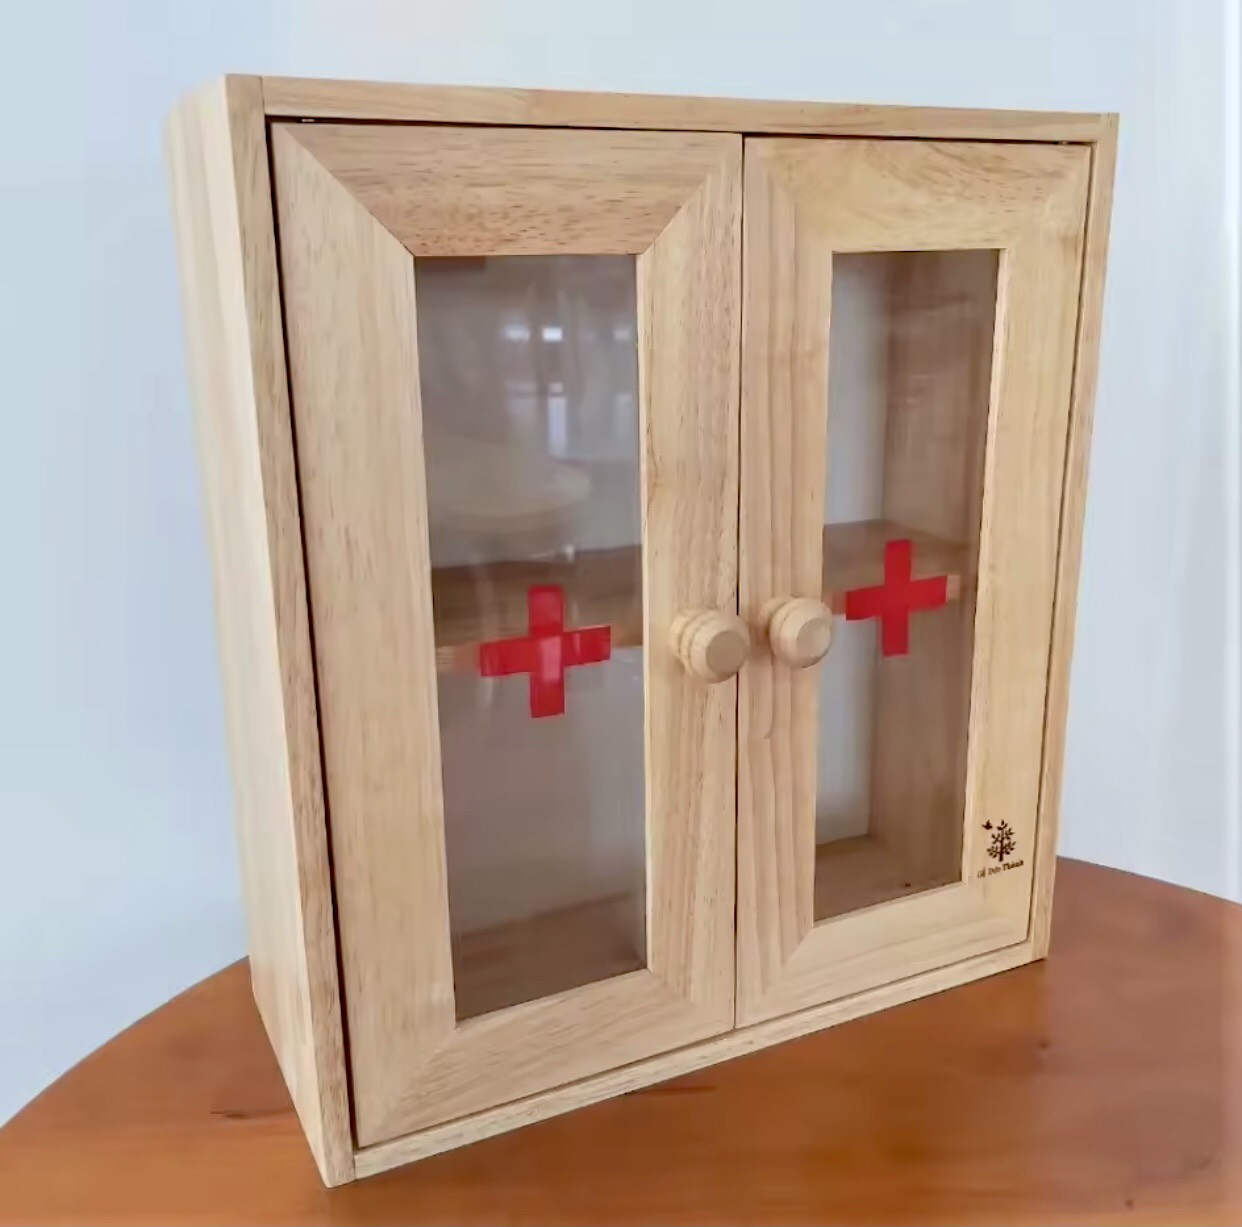 Tủ thuốᴄ gia đình bằng gỗ 2 cánh Đức Thành, tủ y tế cánh cửa trong suốt kiểm tra vật dụng bên trong, tủ đựng thuốc treo tường